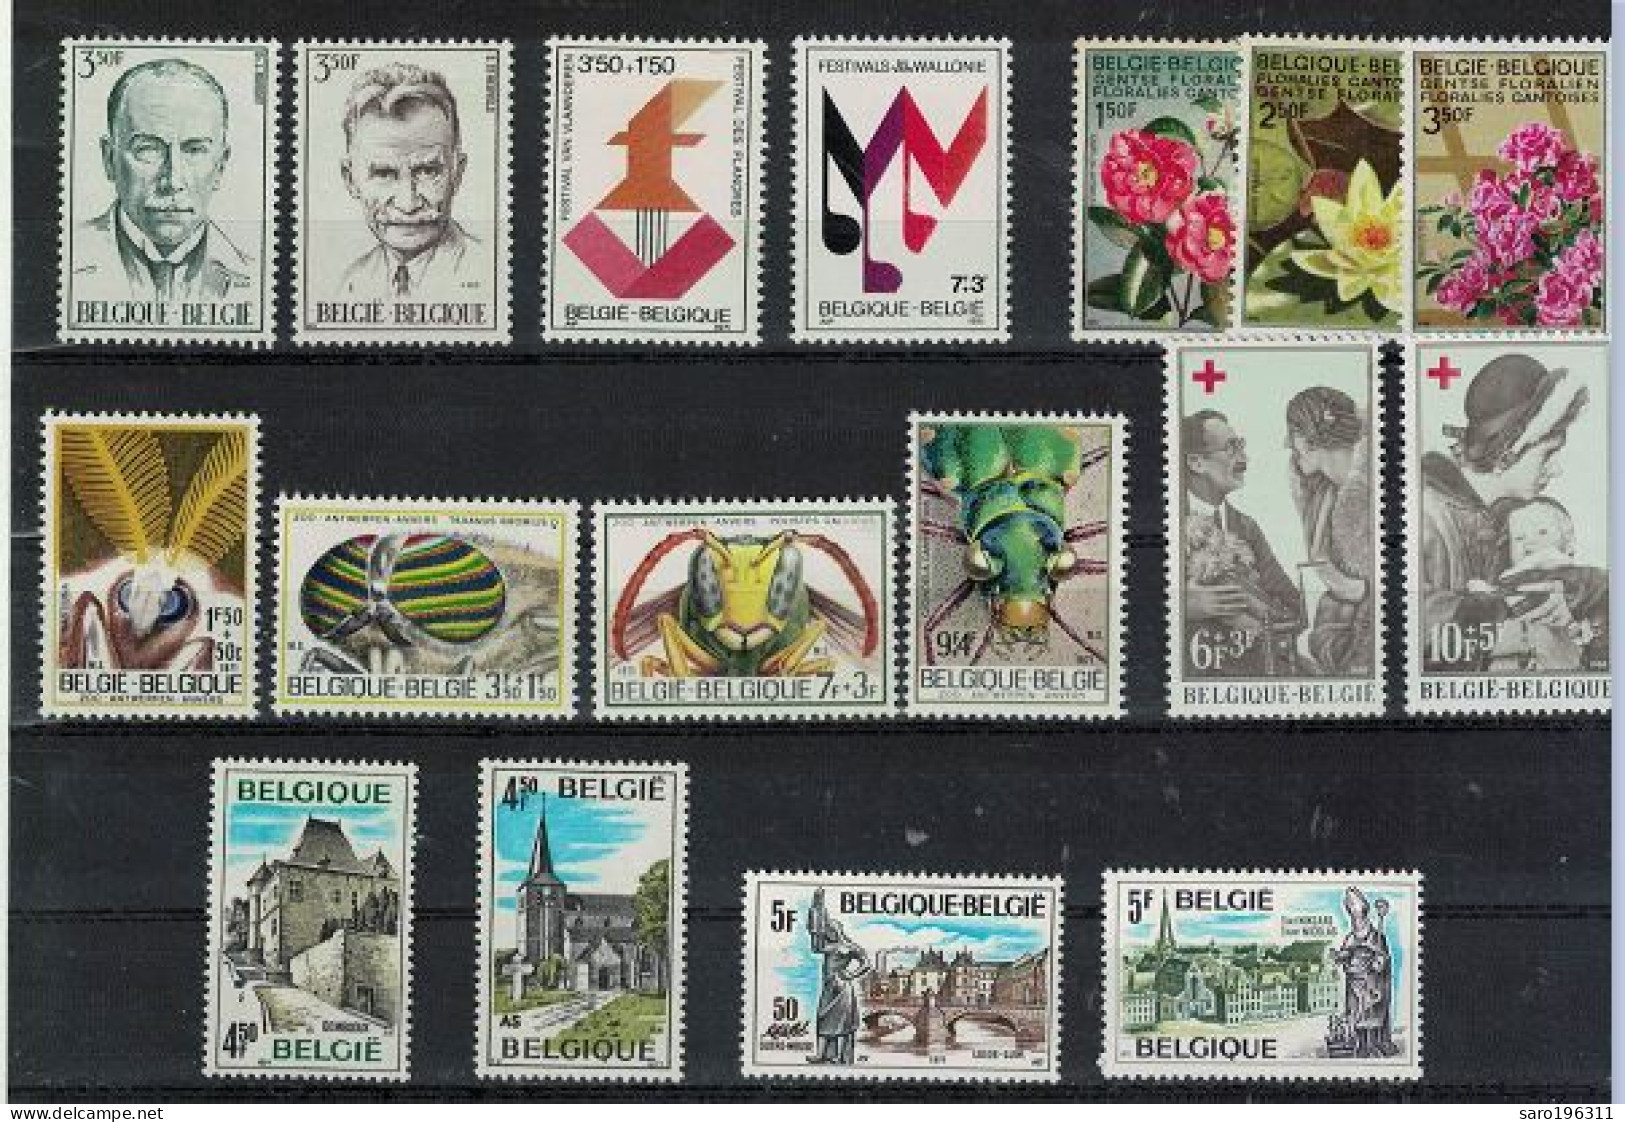 LIQUIDATION  SOUS La FACIALE ** / MNH En SERIES COMPLETES   LOT 6  à  0,89 Euro - Unused Stamps